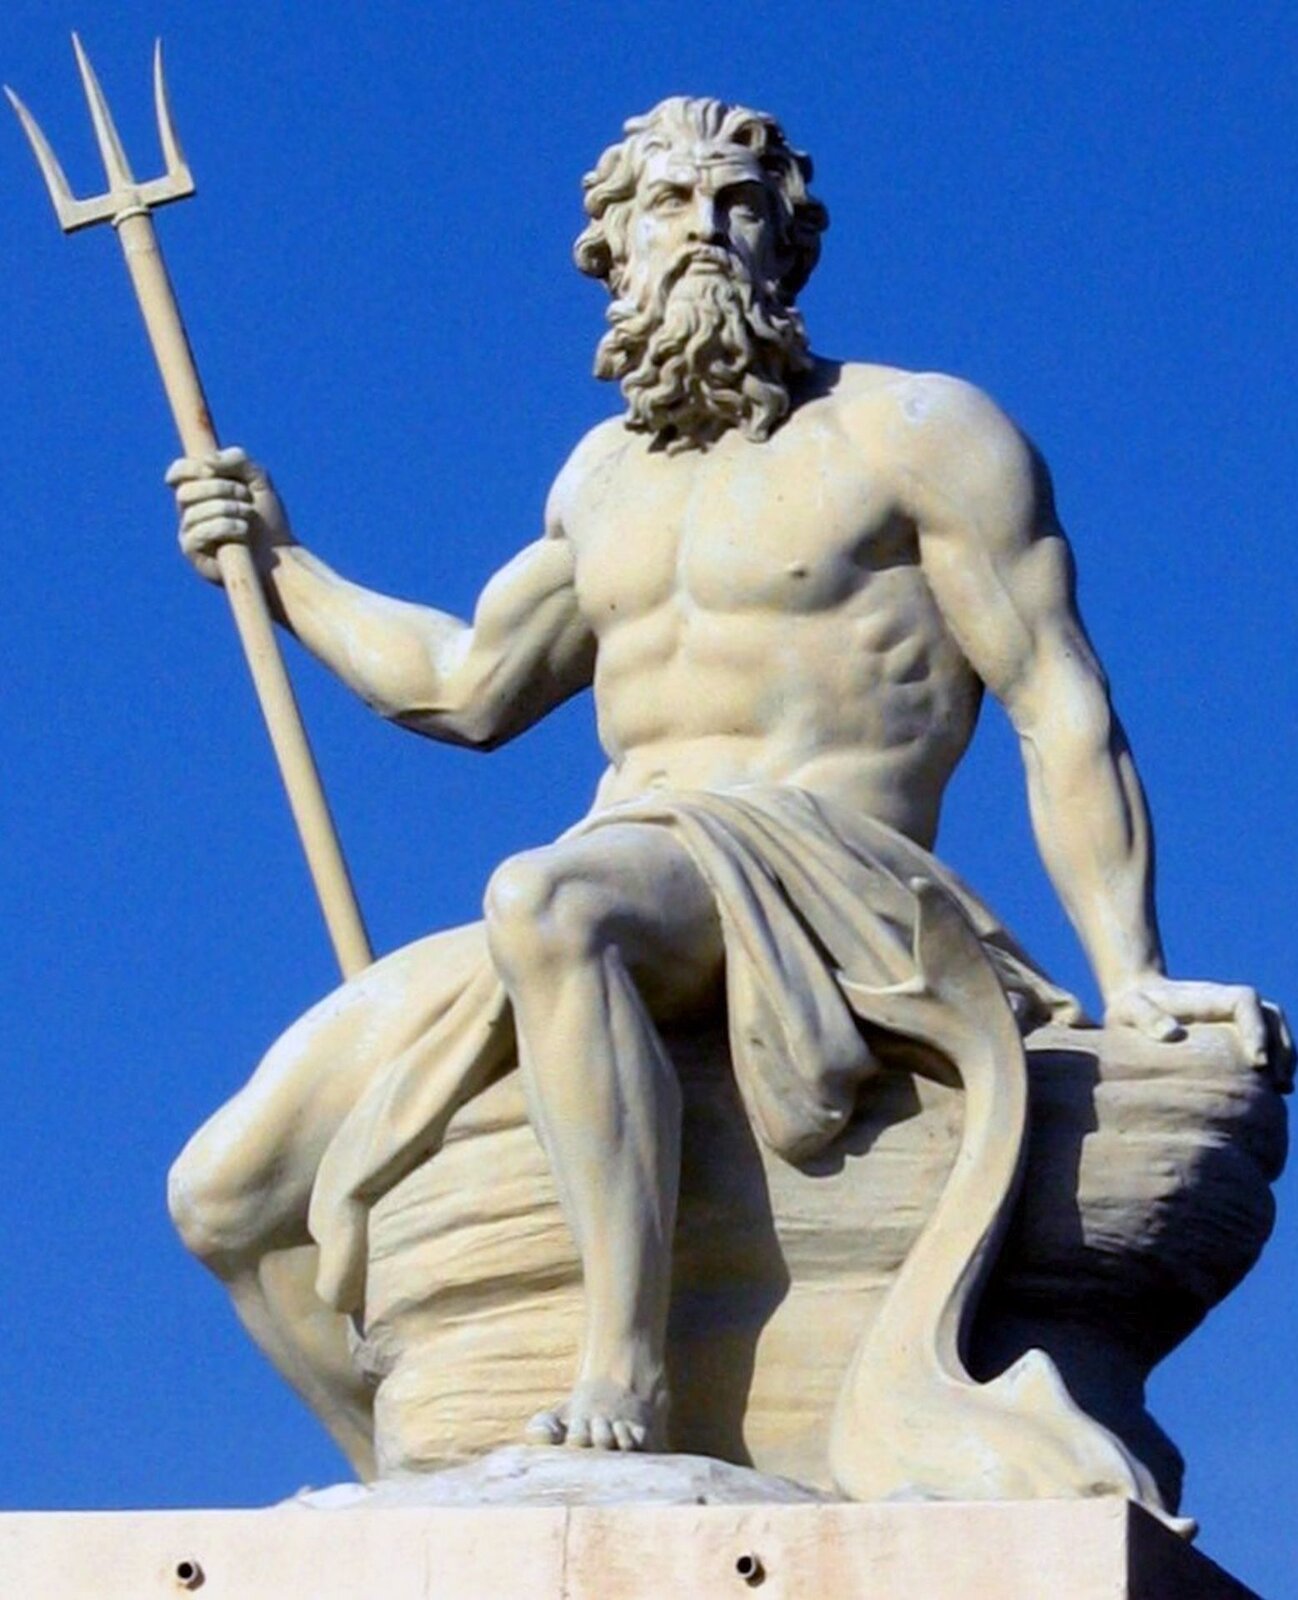 Ilustracja przedstawia posąg siedzącego Posejdona. W mitologii greckiej jest on bogiem mórz, trzęsień ziemi, żeglarzy, rybaków. Mężczyzna w prawej ręce trzyma trójząb, który symbolizuje wodę i panowanie nad nią. Ma długie, lekko kręcone włosy oraz brodę i wąsy.